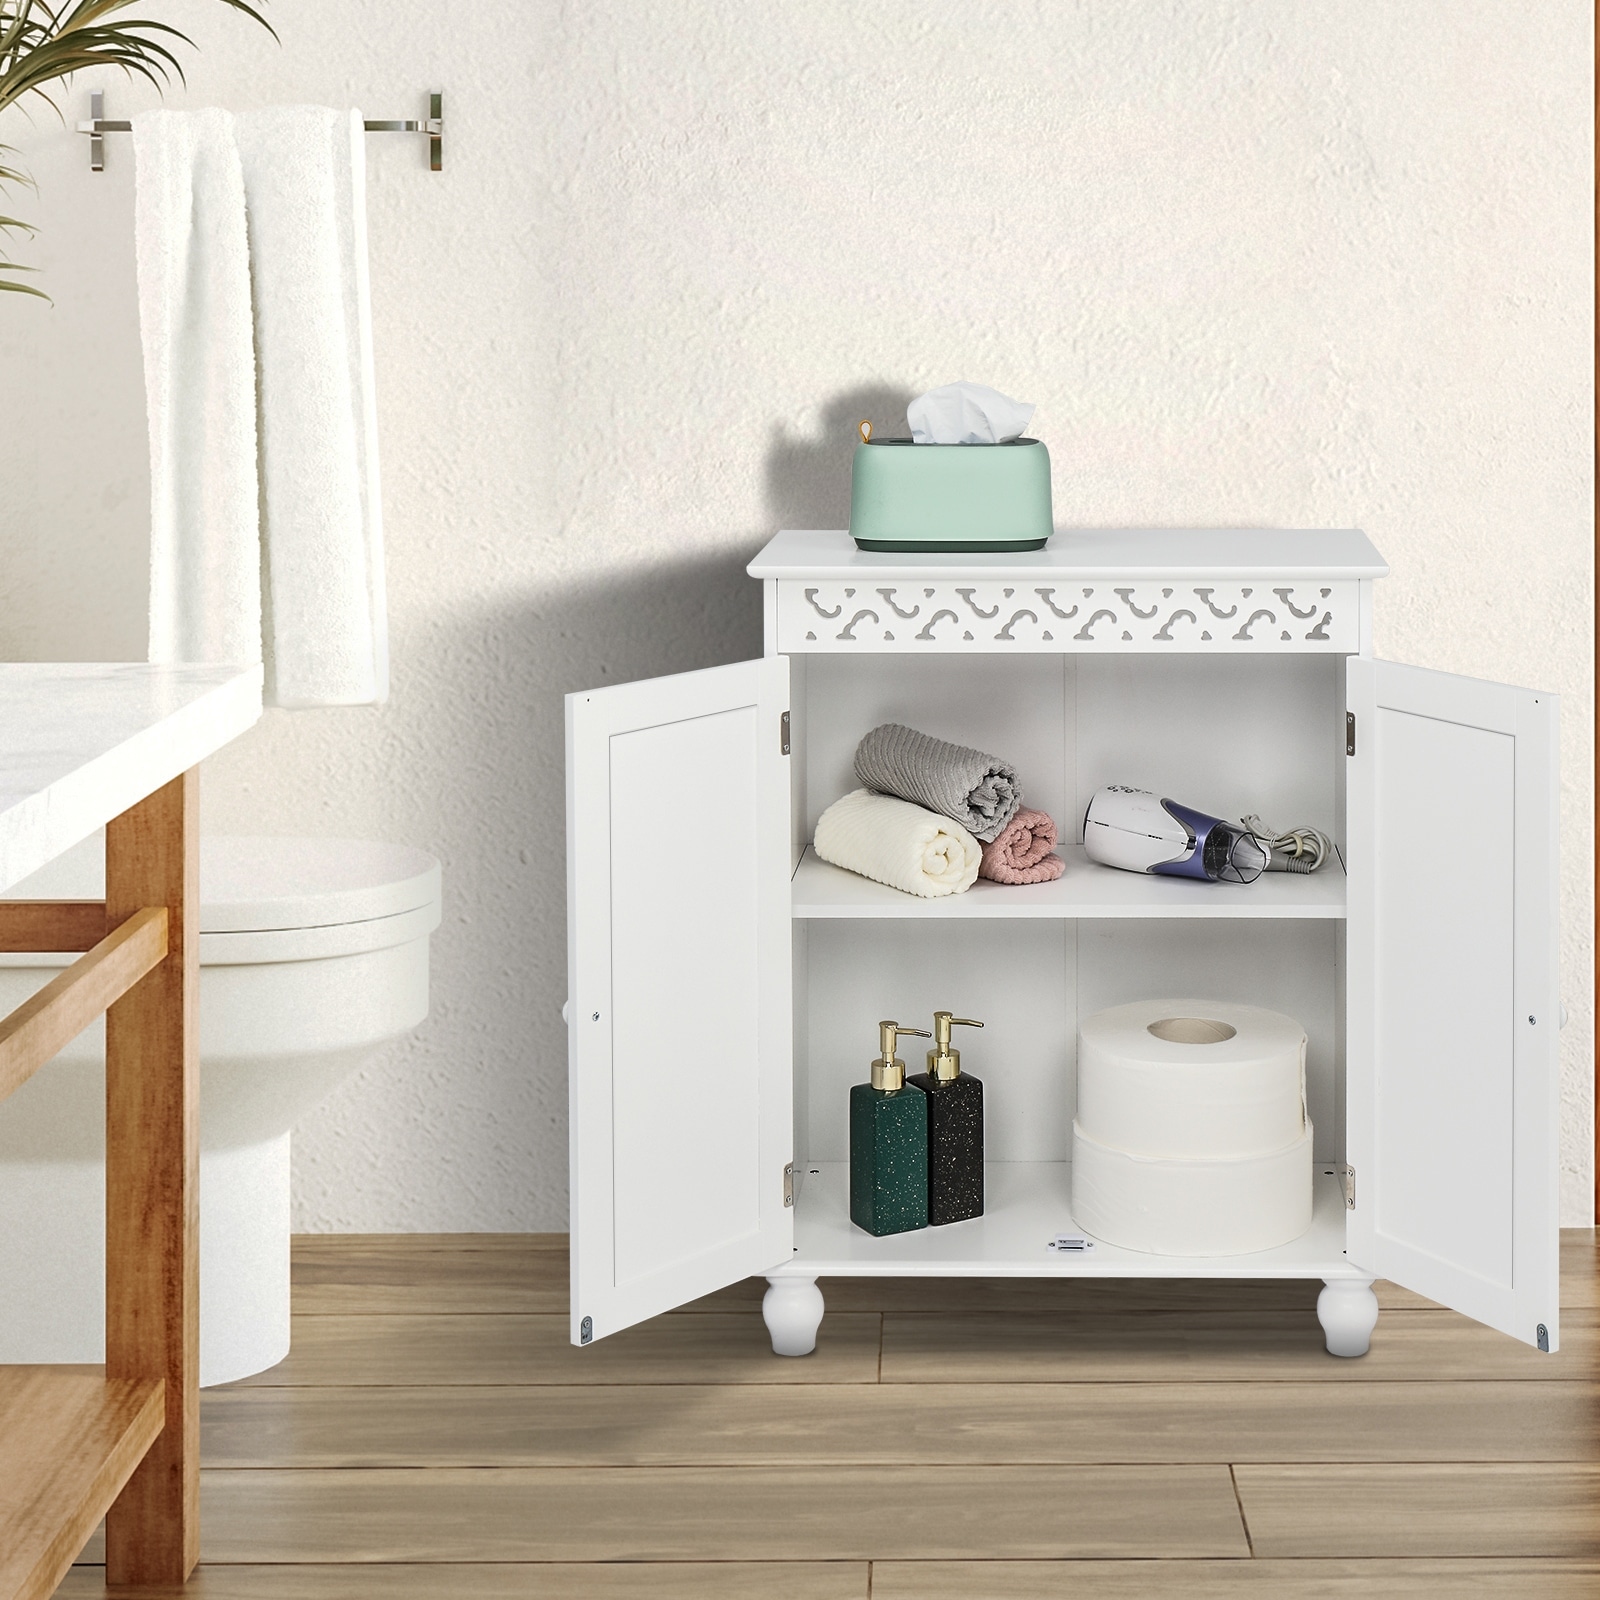 Ktaxon Small Bathroom Storage Corner Floor Cabinet with Doors and